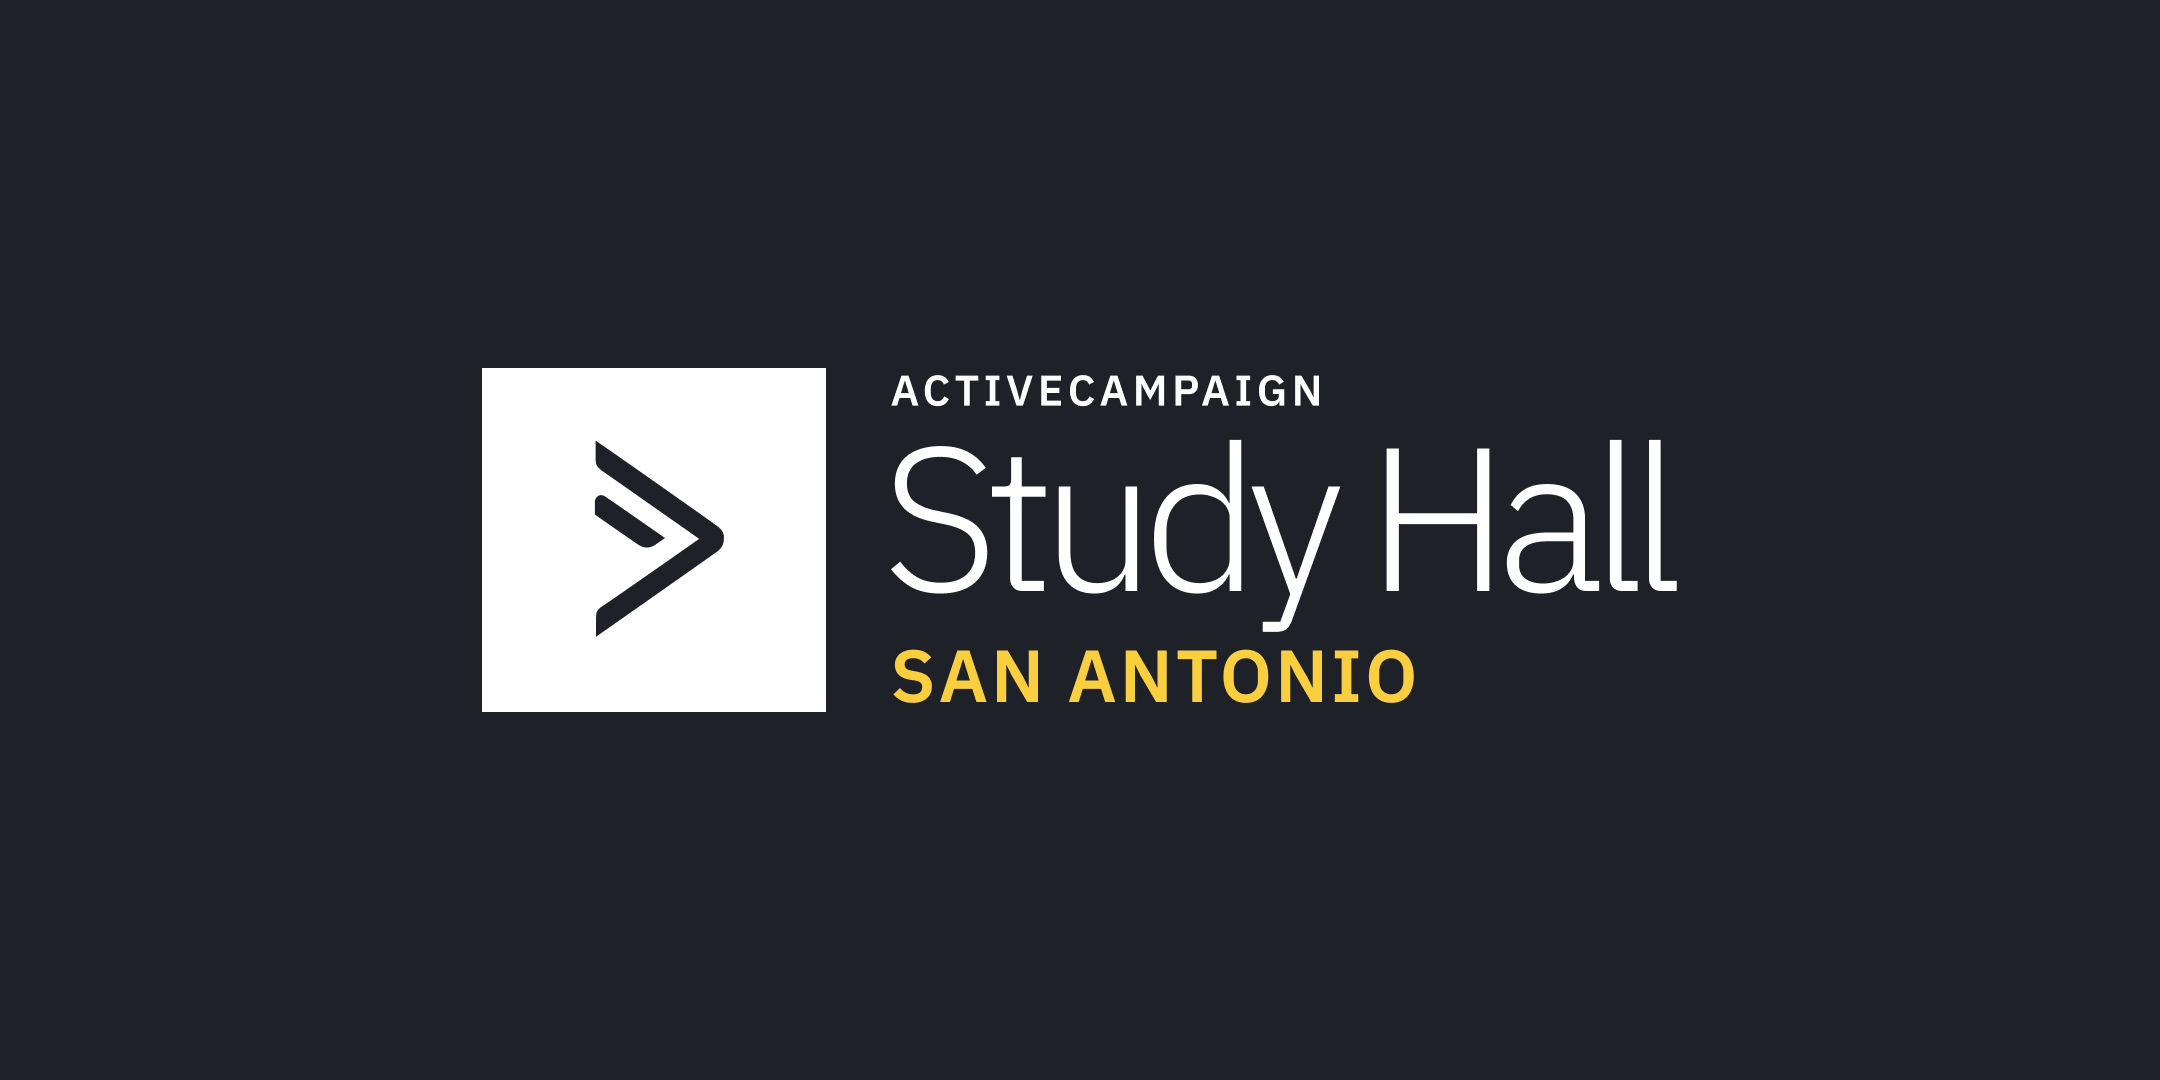 ActiveCampaign Study Hall | San Antonio